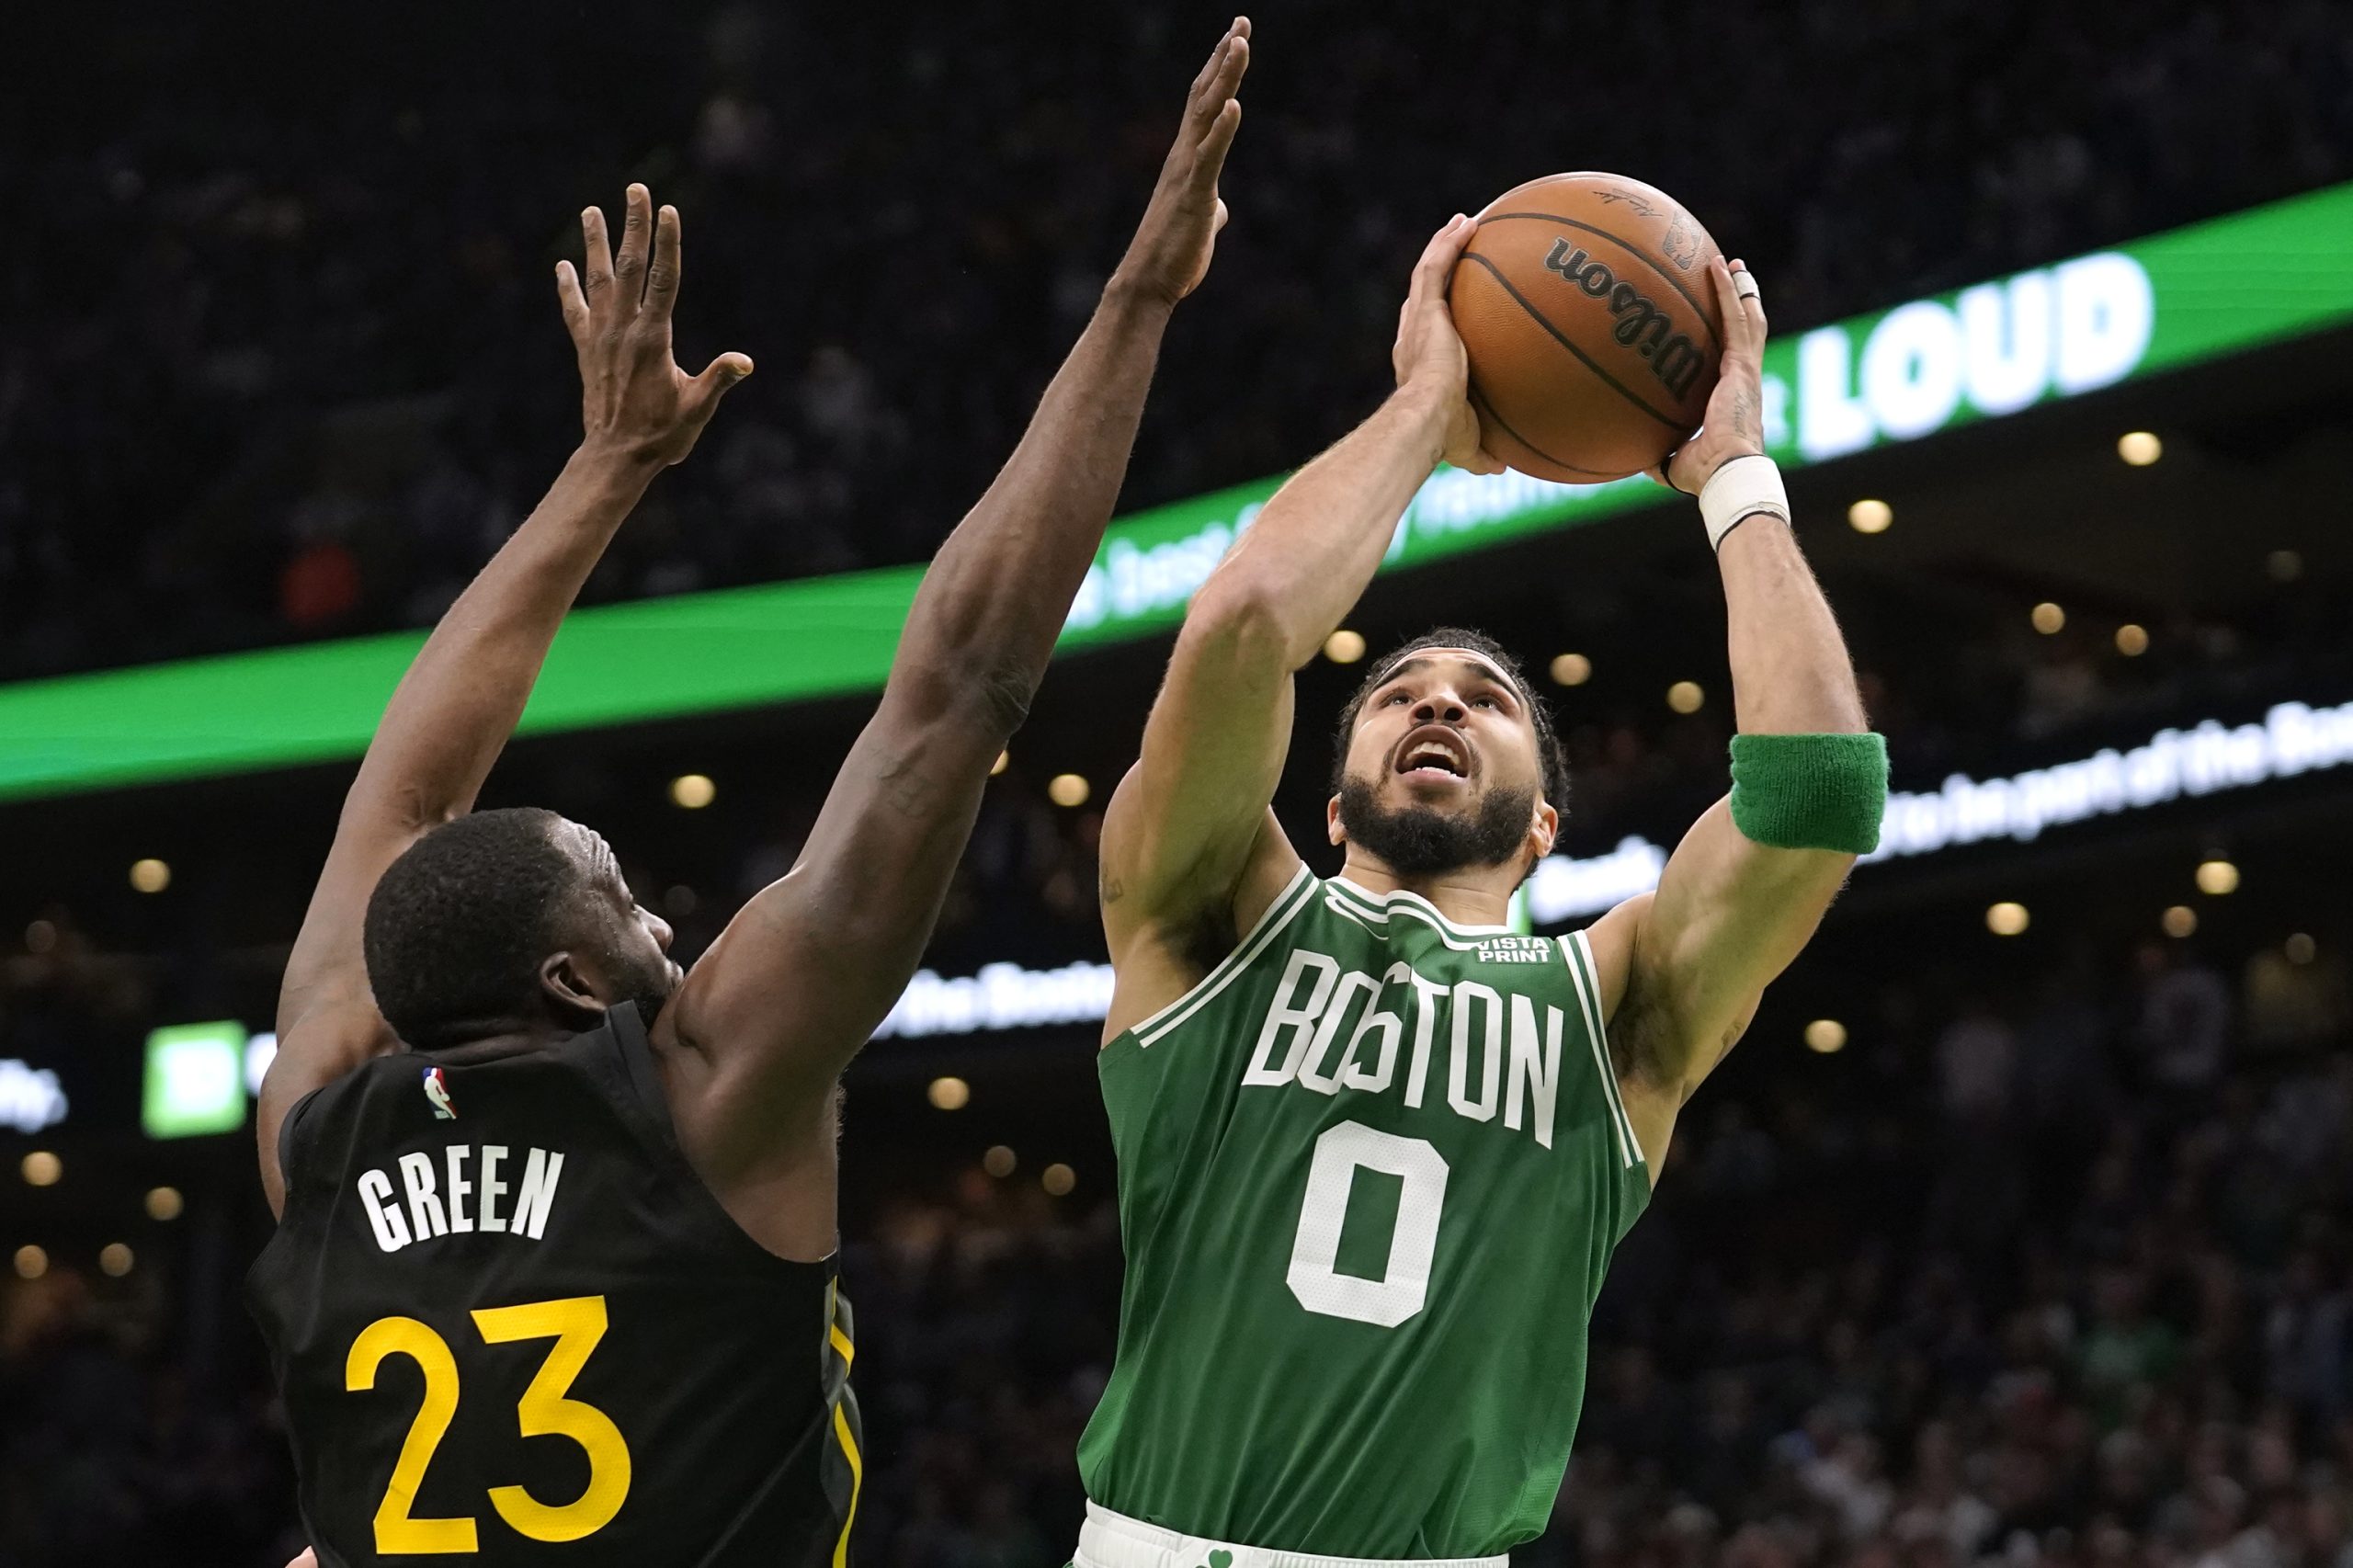 Victoria de los Celtics ante los Warriors en la prórroga con aroma de revancha